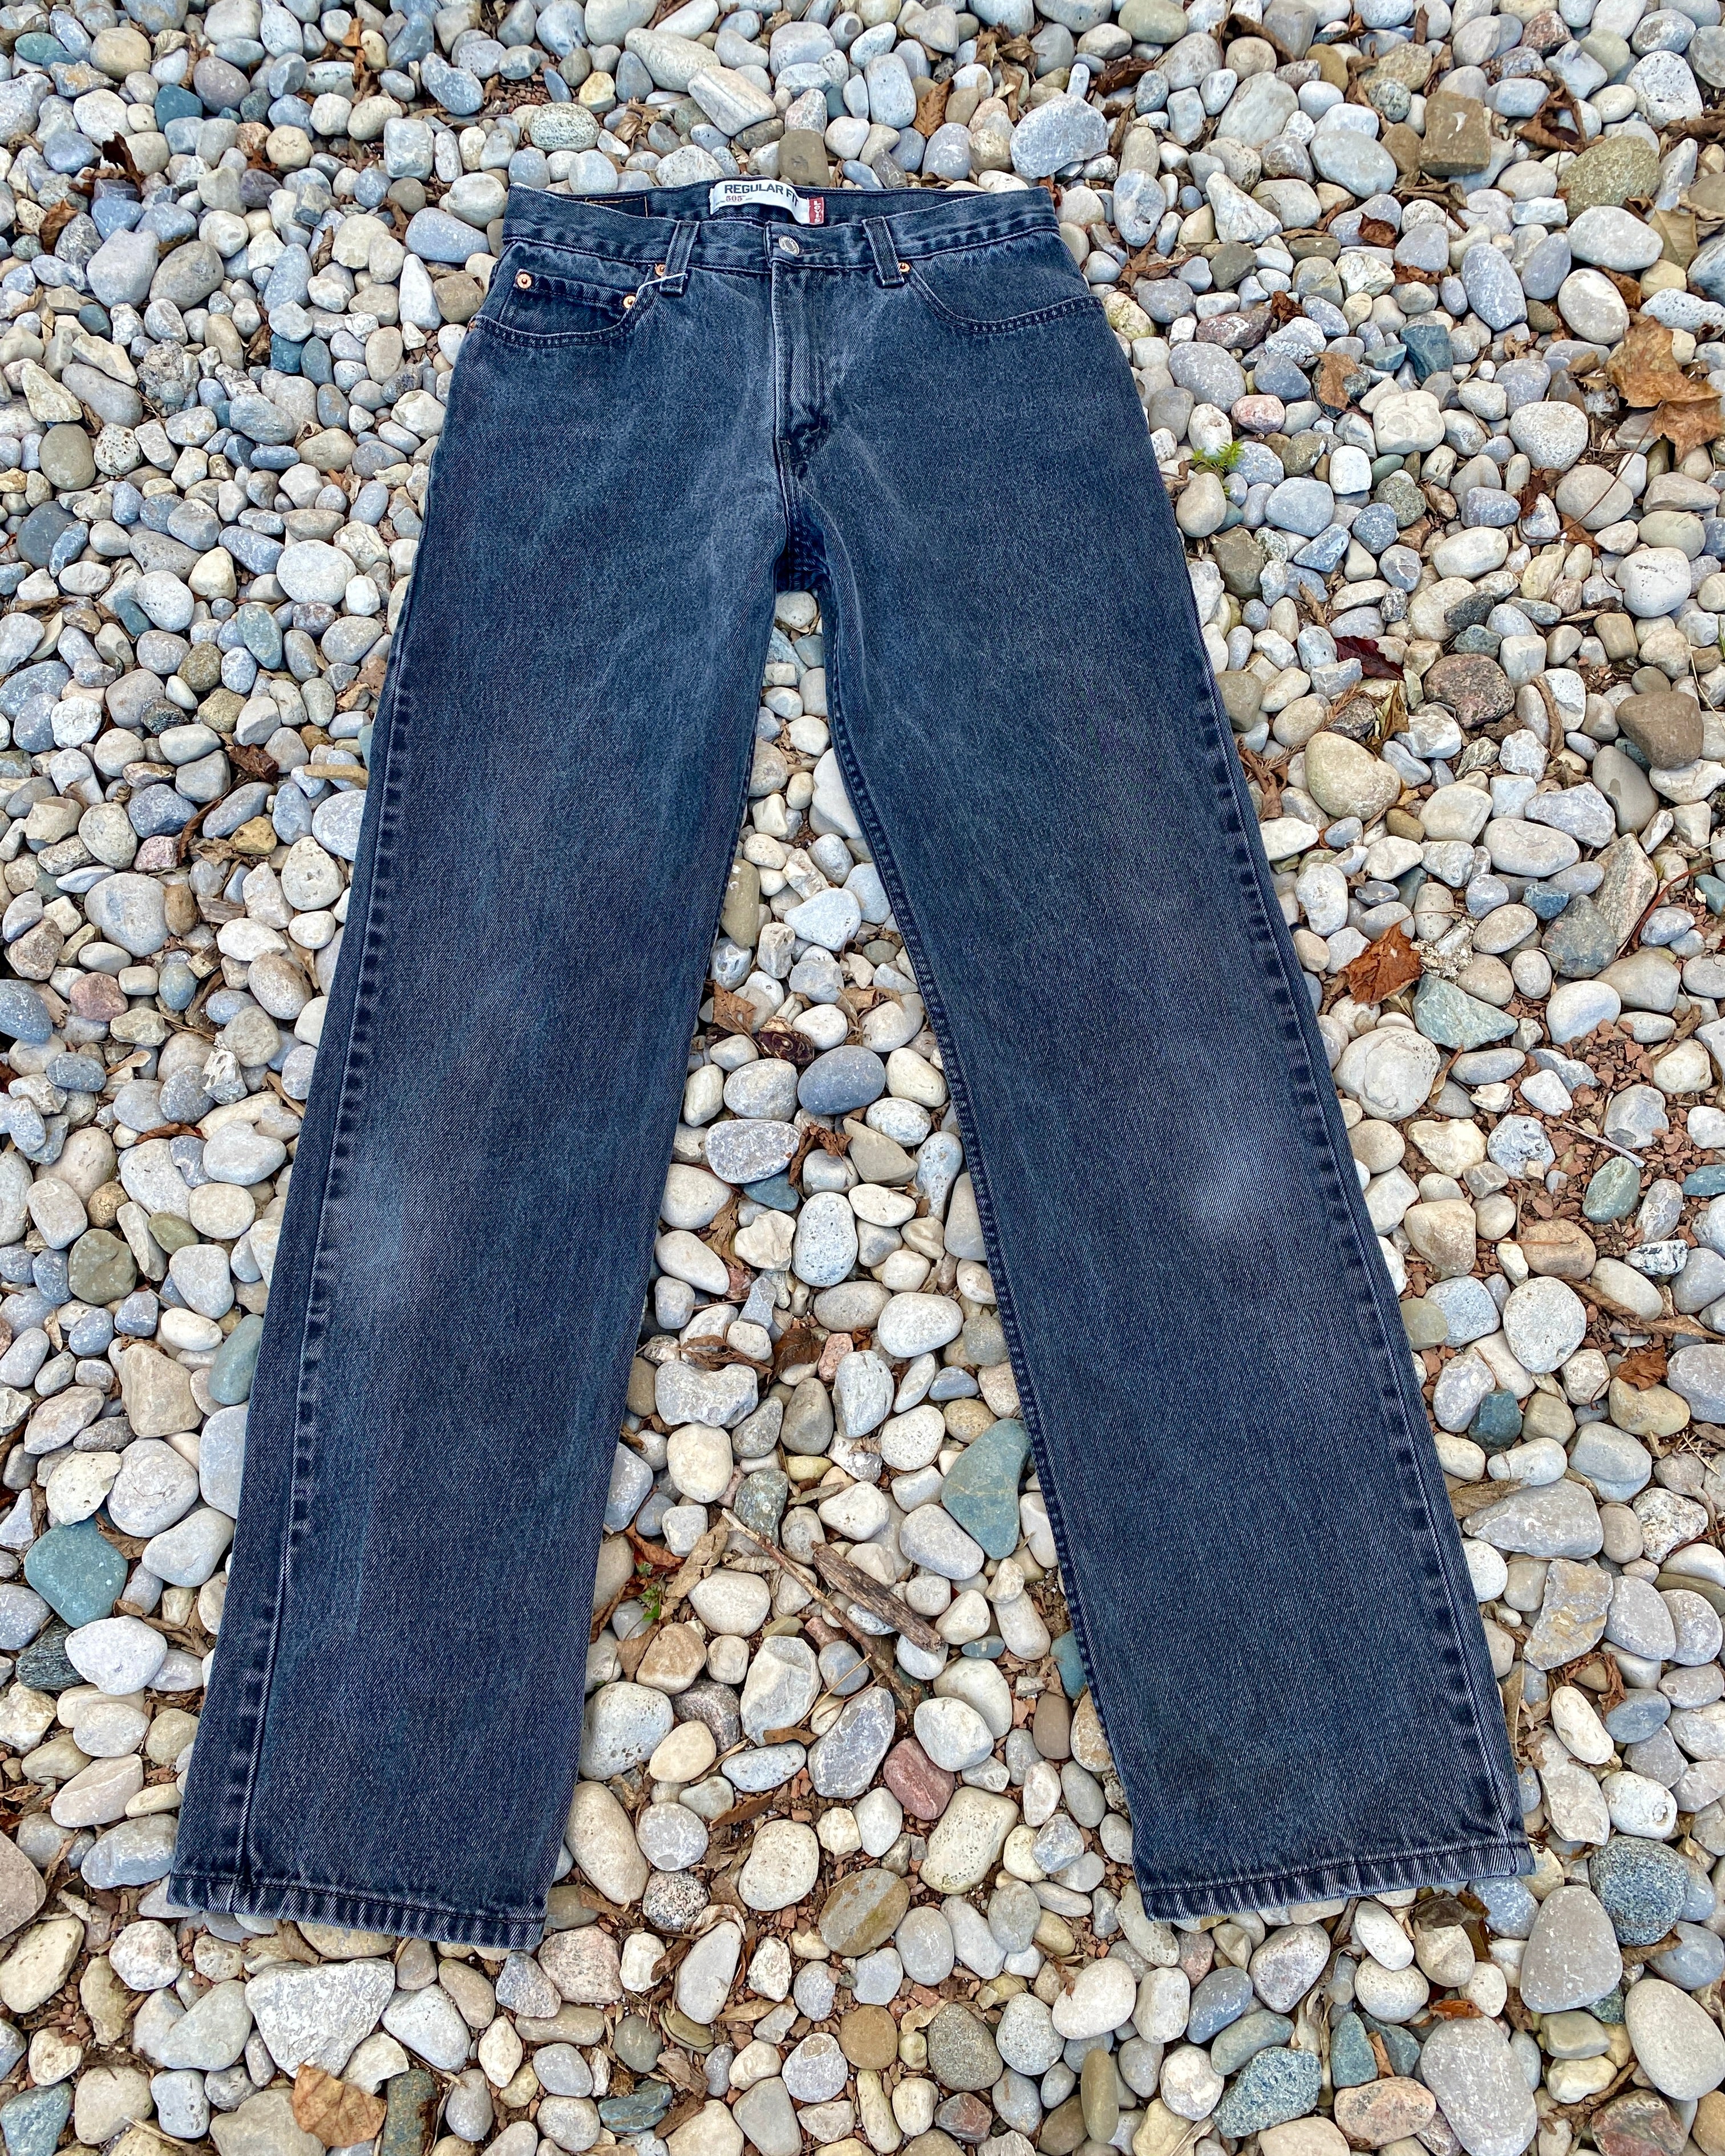 Vintage Levis 505 Black Wash Jeans size 32